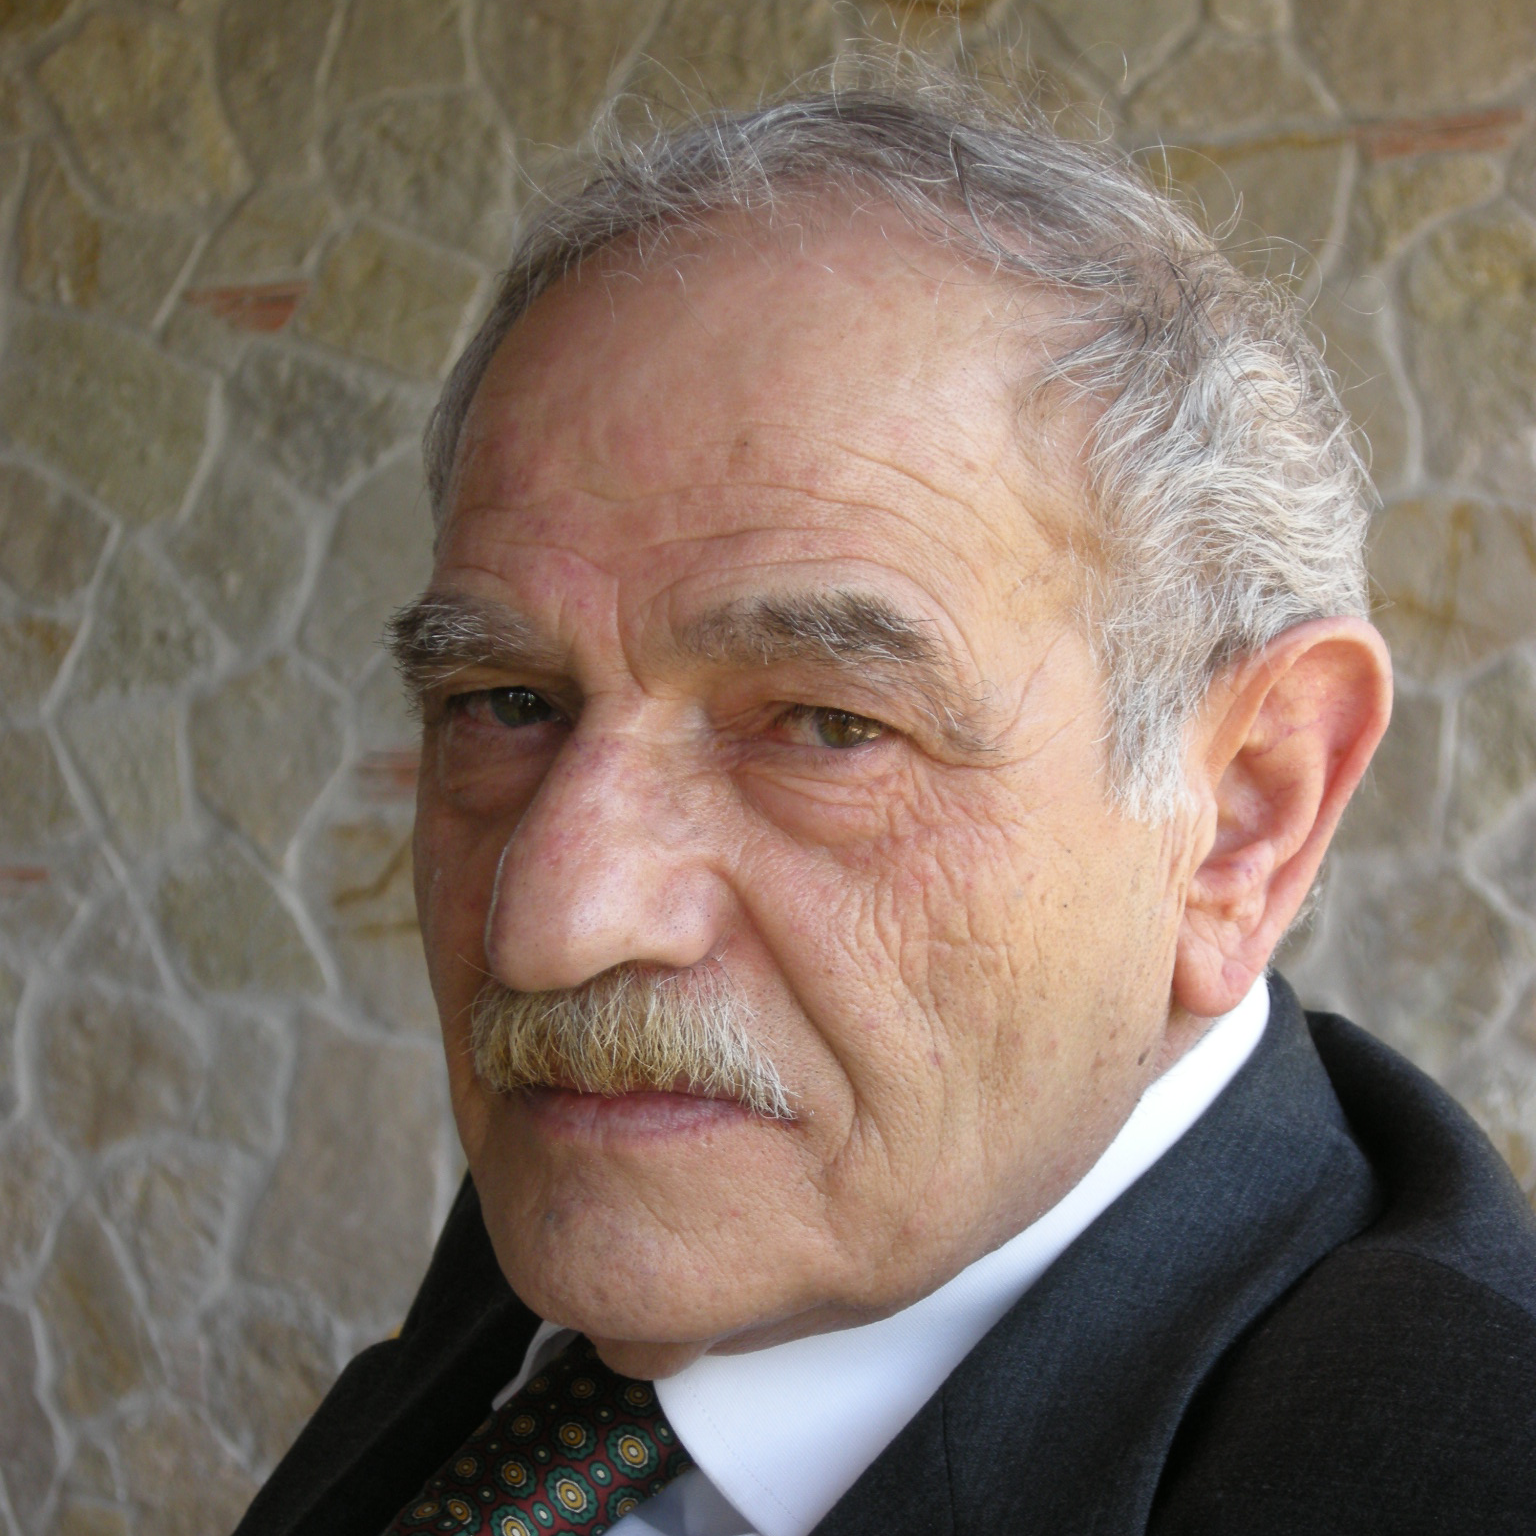 Dr. Santino Bonsera profile picture.